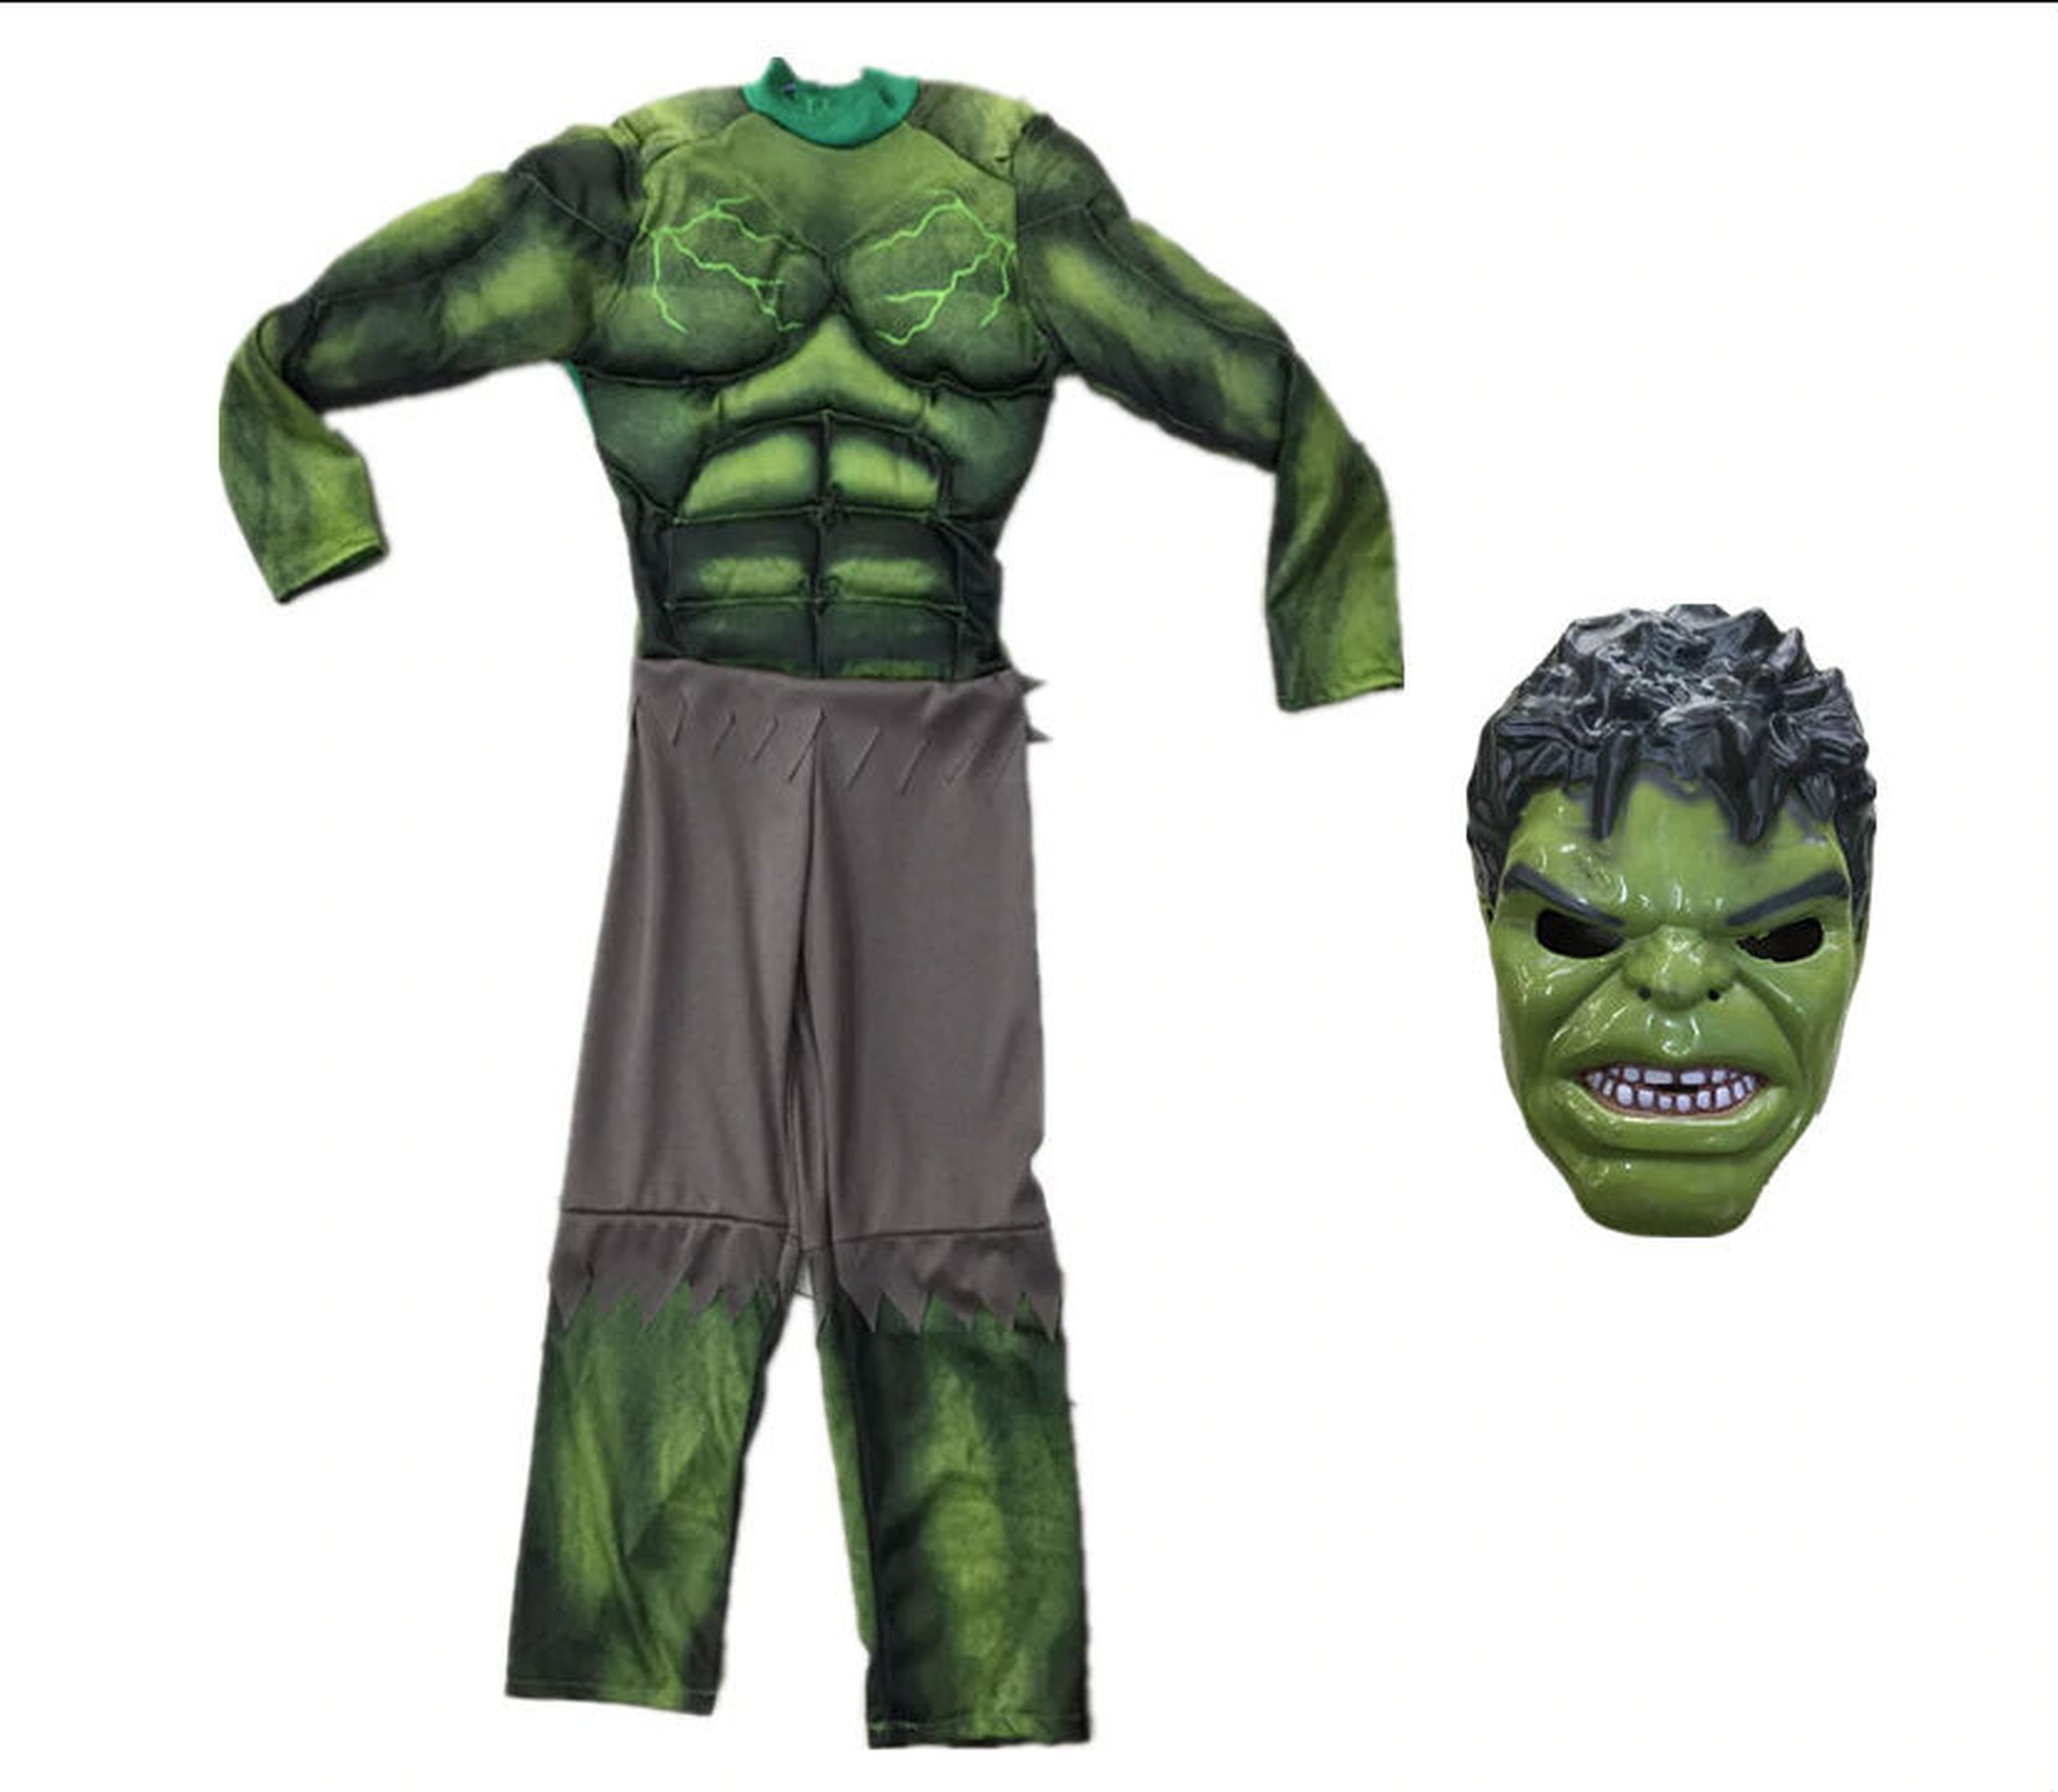 Disfraz de Hulk